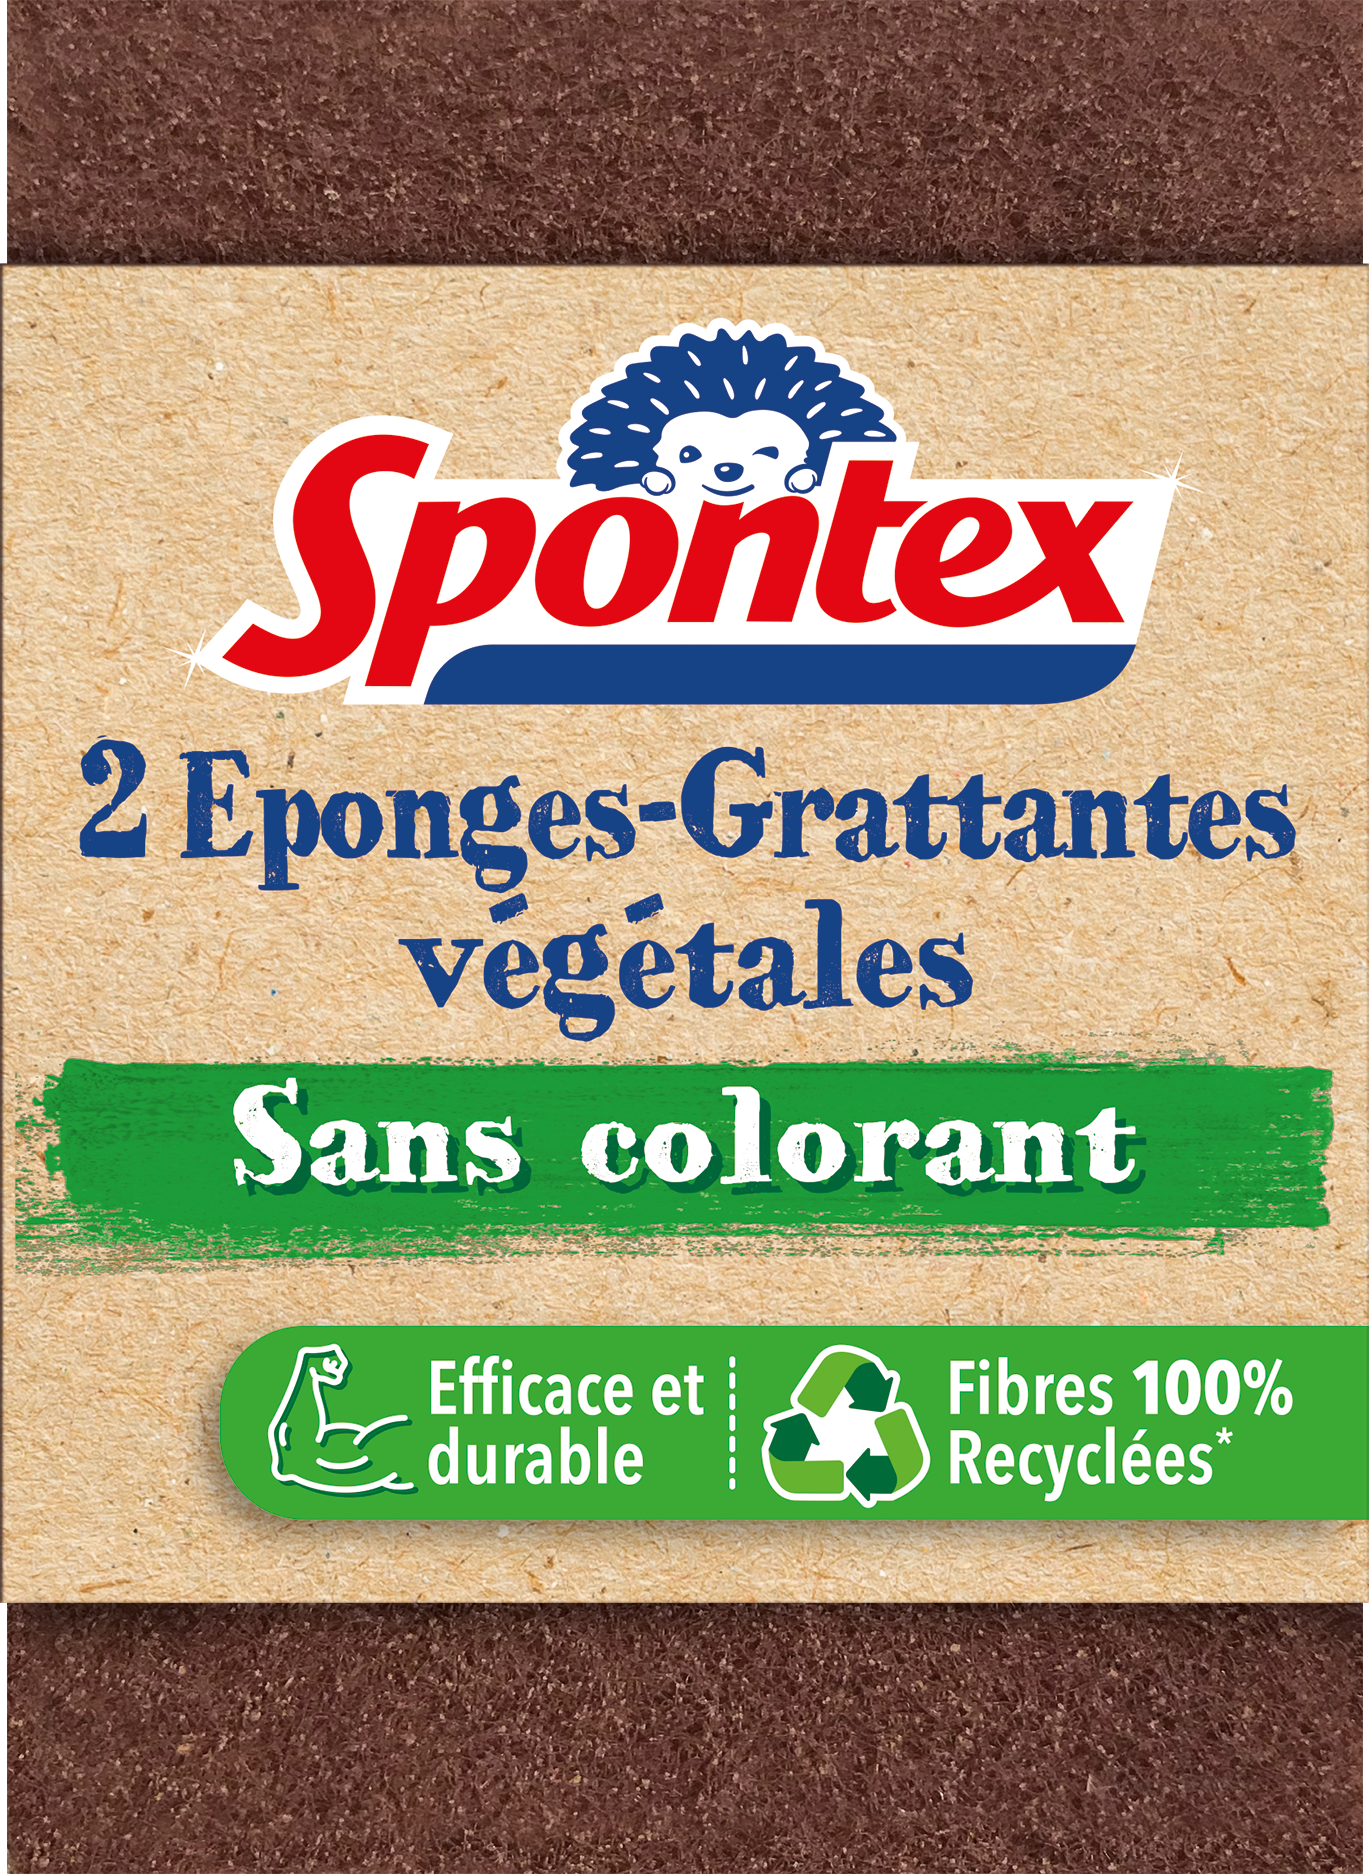 SPONTEX - 2 GRATTE EPONGES STOP GRAISSE - Les Indispensables au Quotidien/ Eponges, Grattoirs, Serpières, Lavettes 